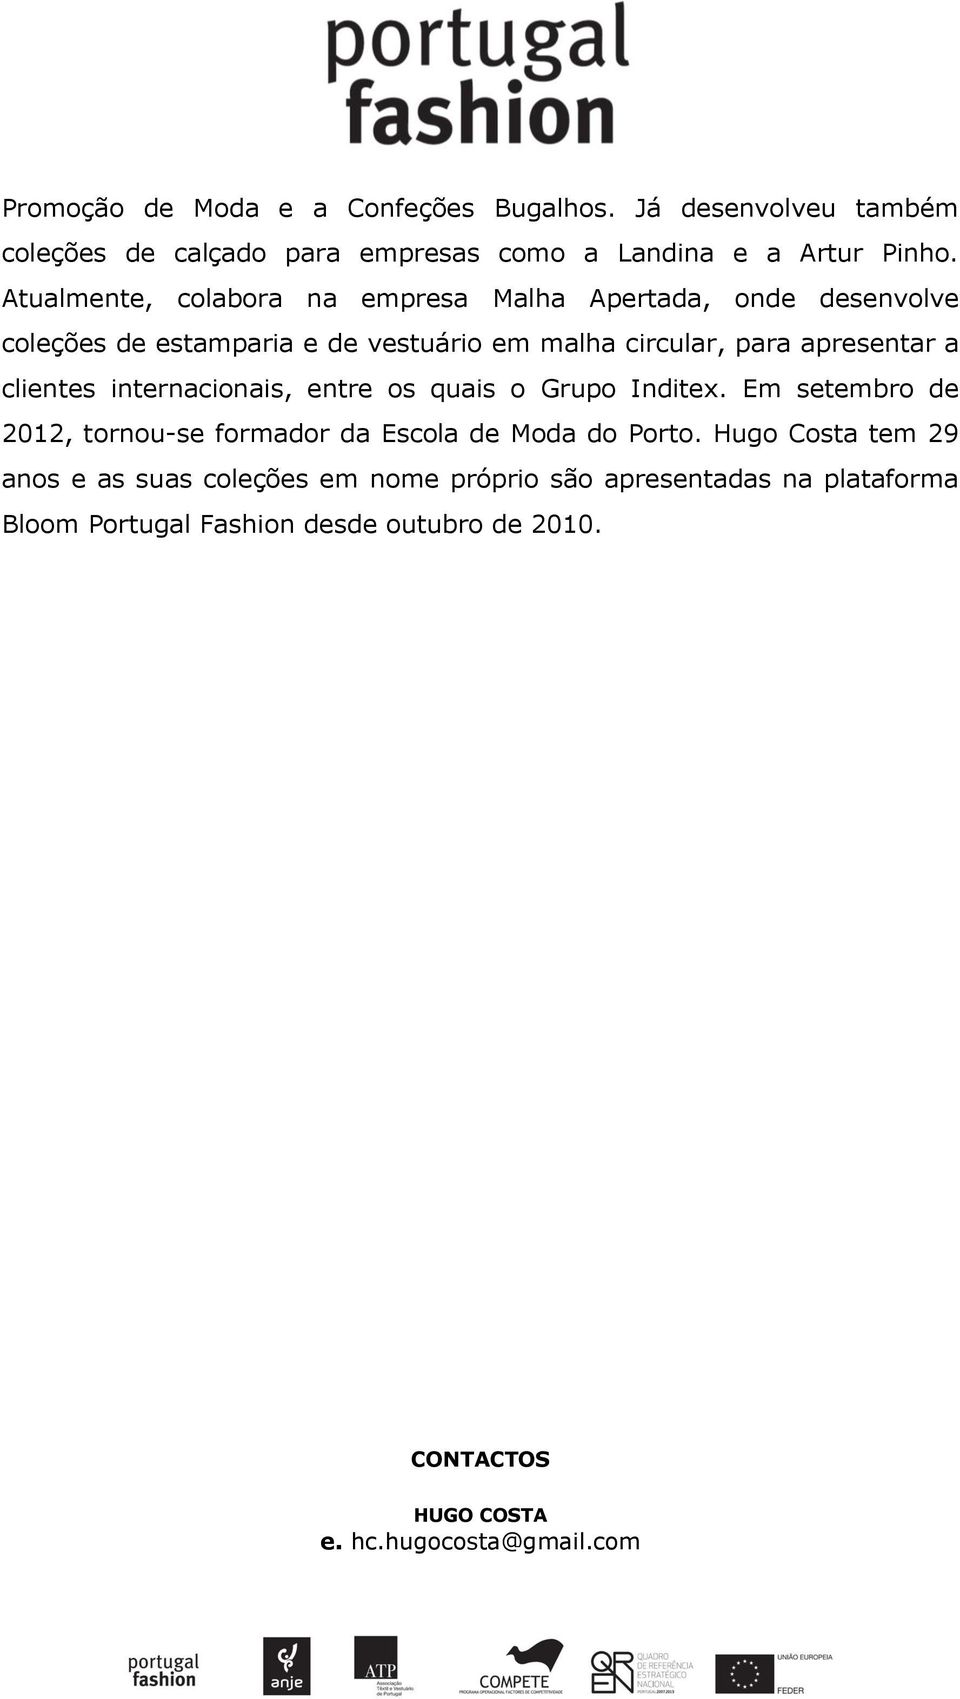 clientes internacionais, entre os quais o Grupo Inditex. Em setembro de 2012, tornou-se formador da Escola de Moda do Porto.